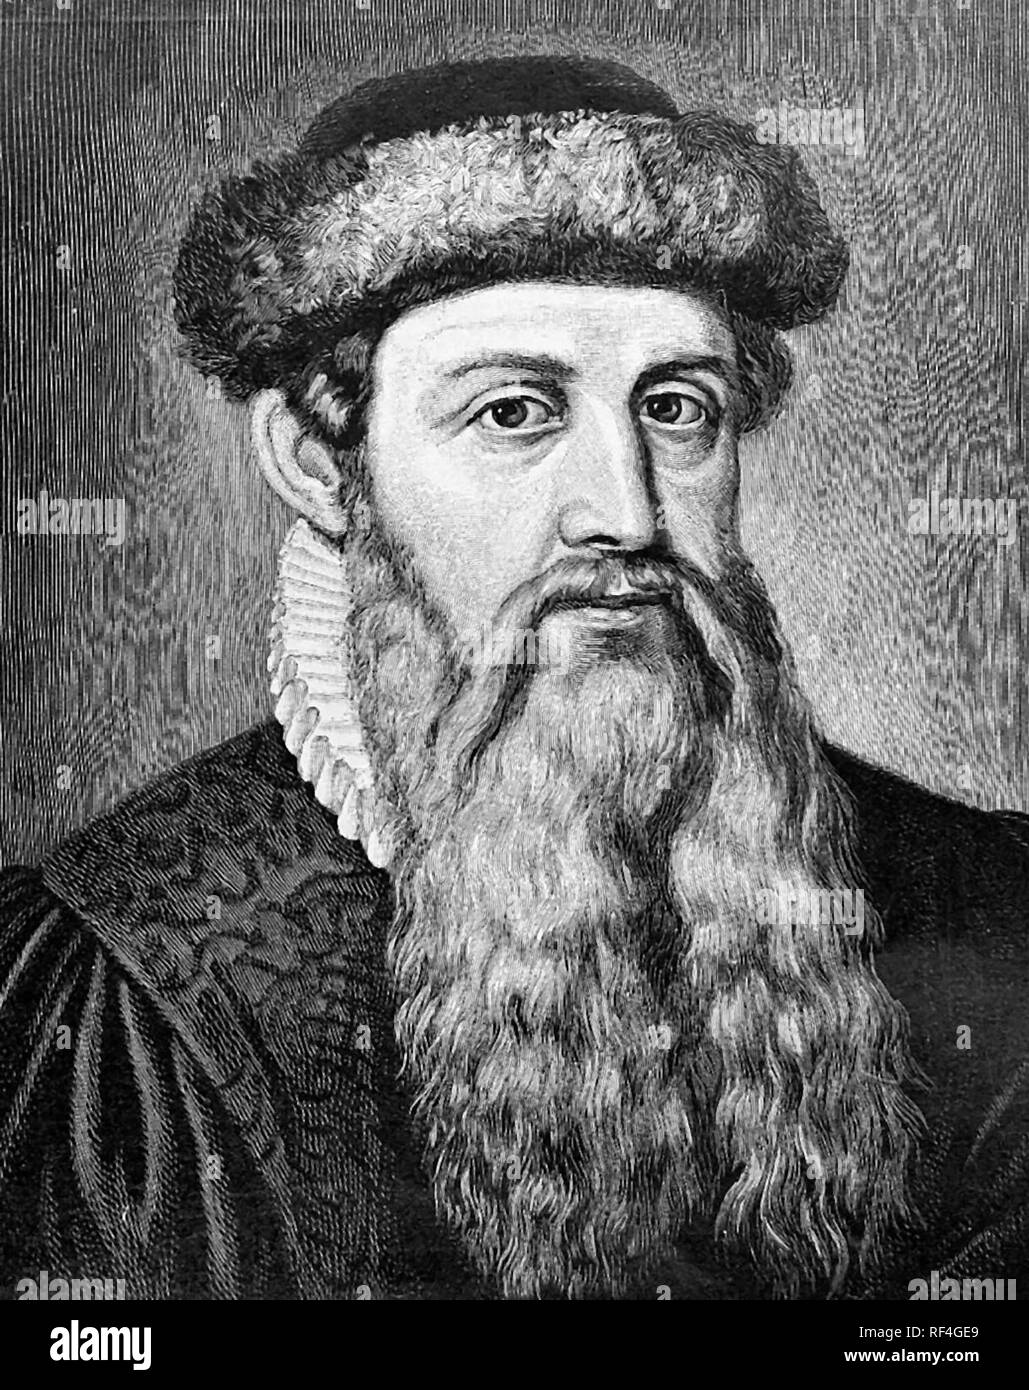 Johannes Gutenberg, einem Deutschen Schmied, Goldschmied, Erfinder, Drucker und Verleger, Drucken in Europa mit der Druckerpresse eingeführt. Stockfoto